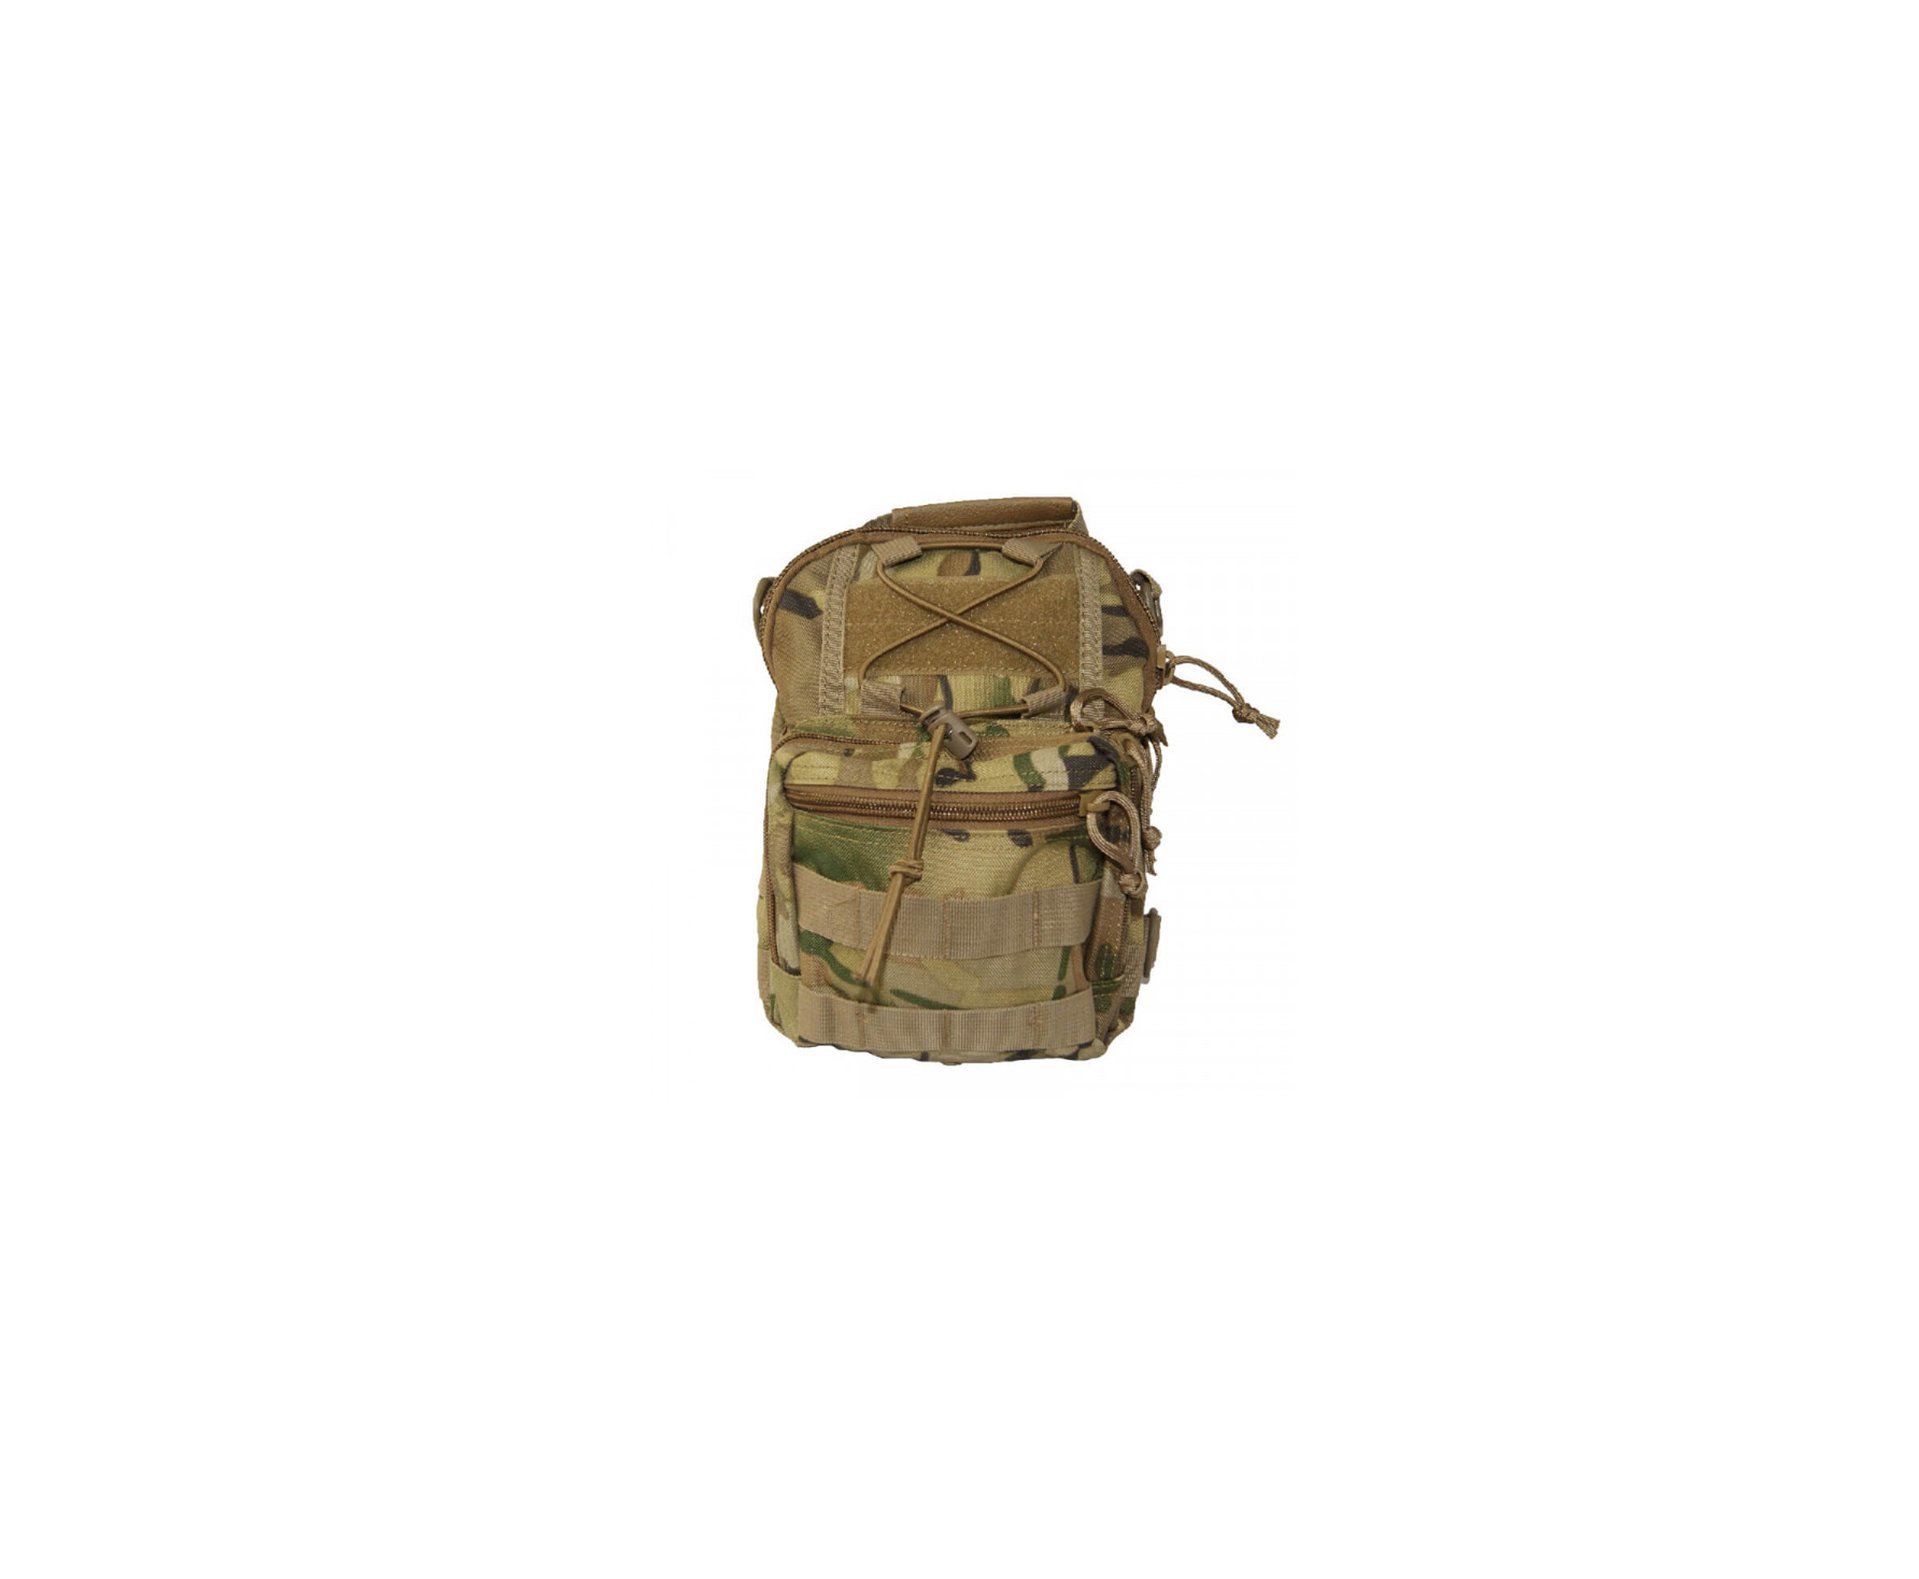 Bolsa Tática Pentagon Ucb Shoulder Bag - Multicam - Pk-098mc Evo Tactical